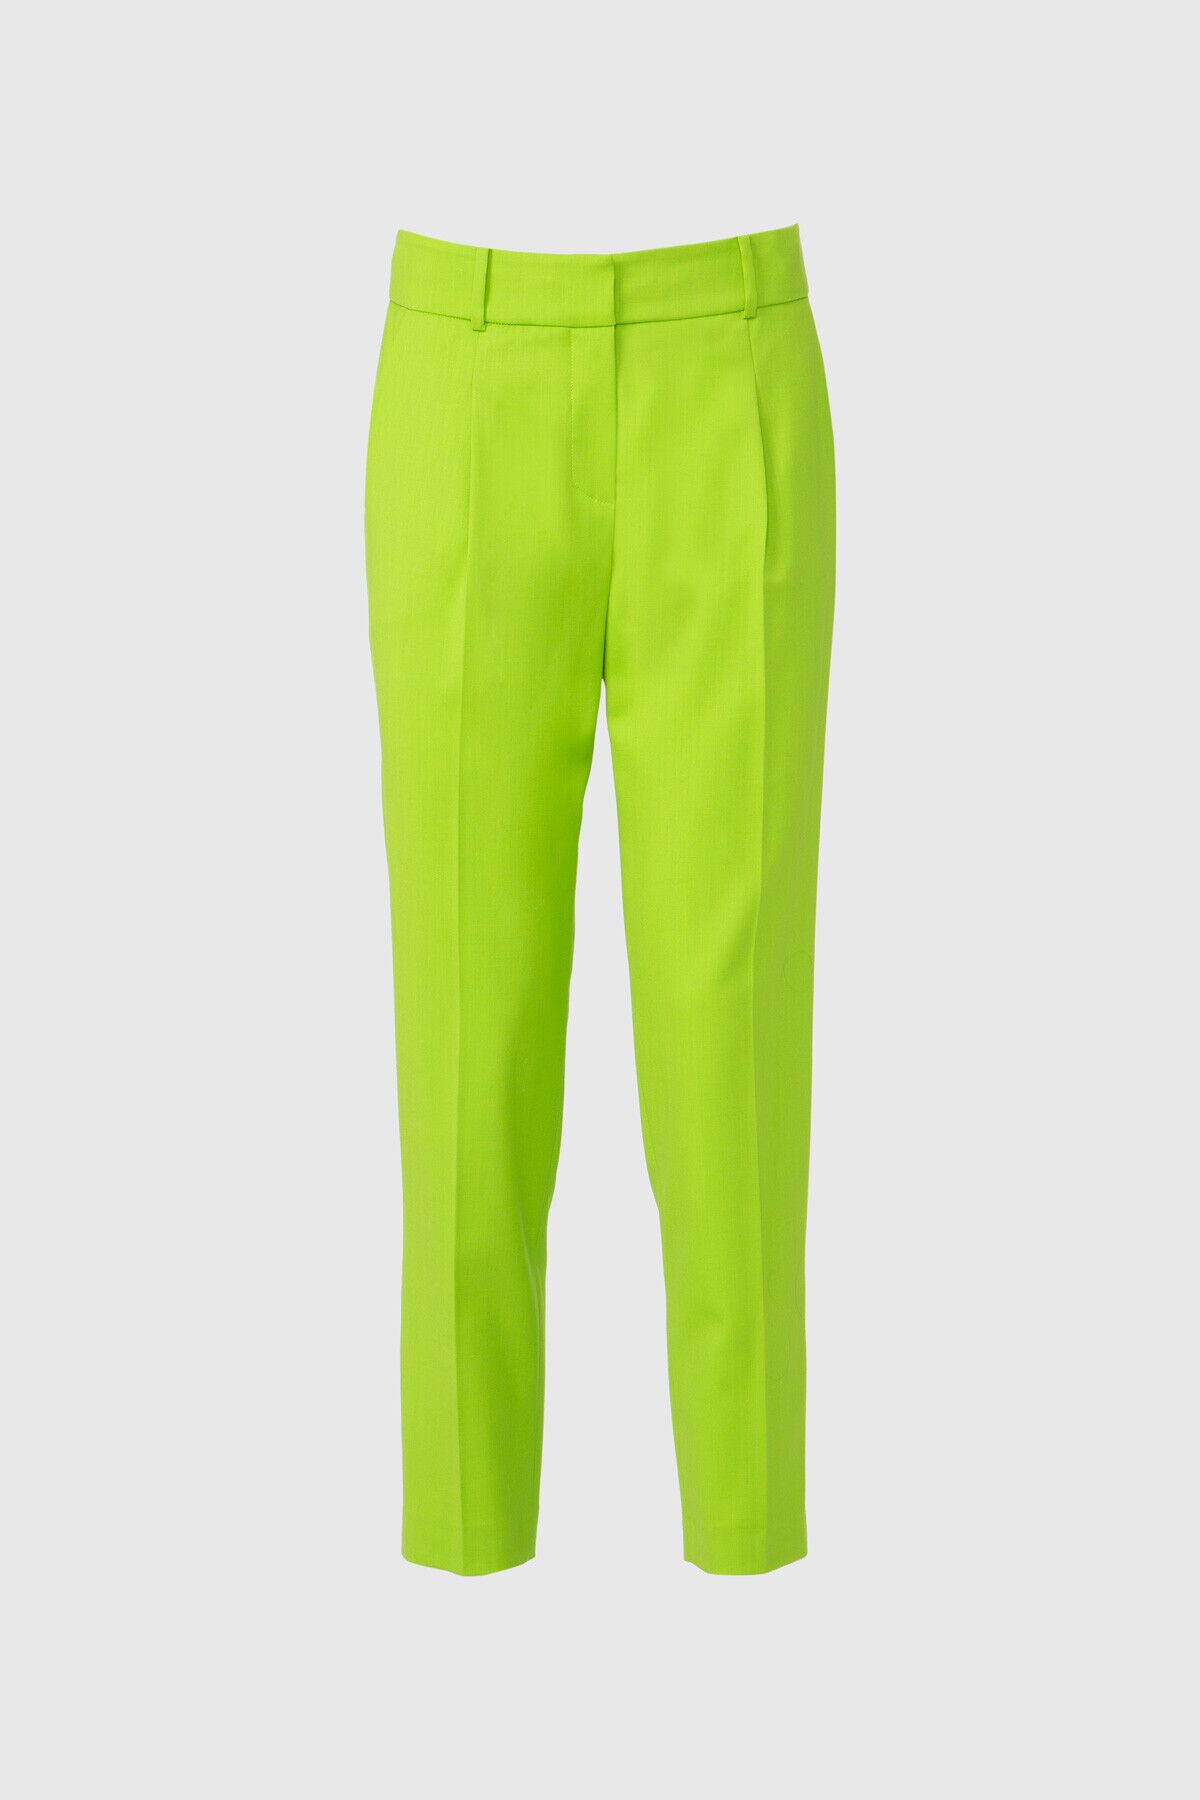  GIZIA - Klasik Bilek Boy Yeşil Pantolon